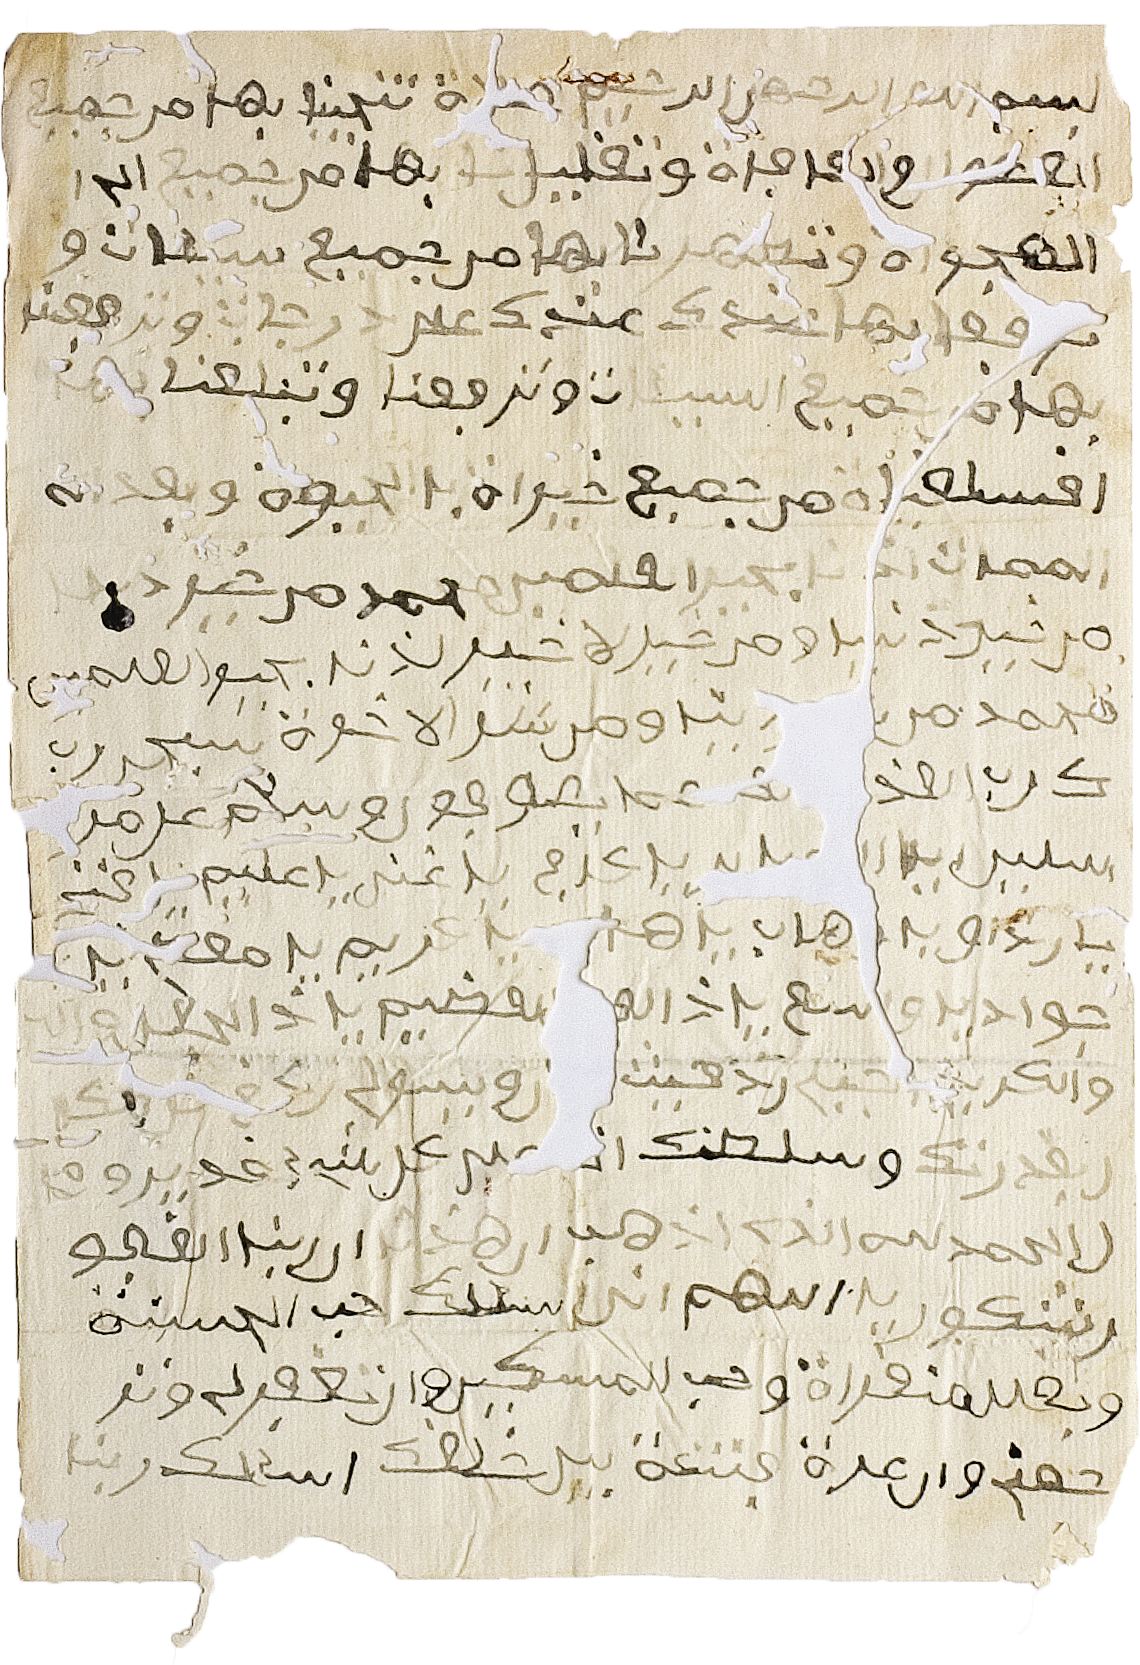 Fotografia. Imagem de um manuscrito com textos em árabe.